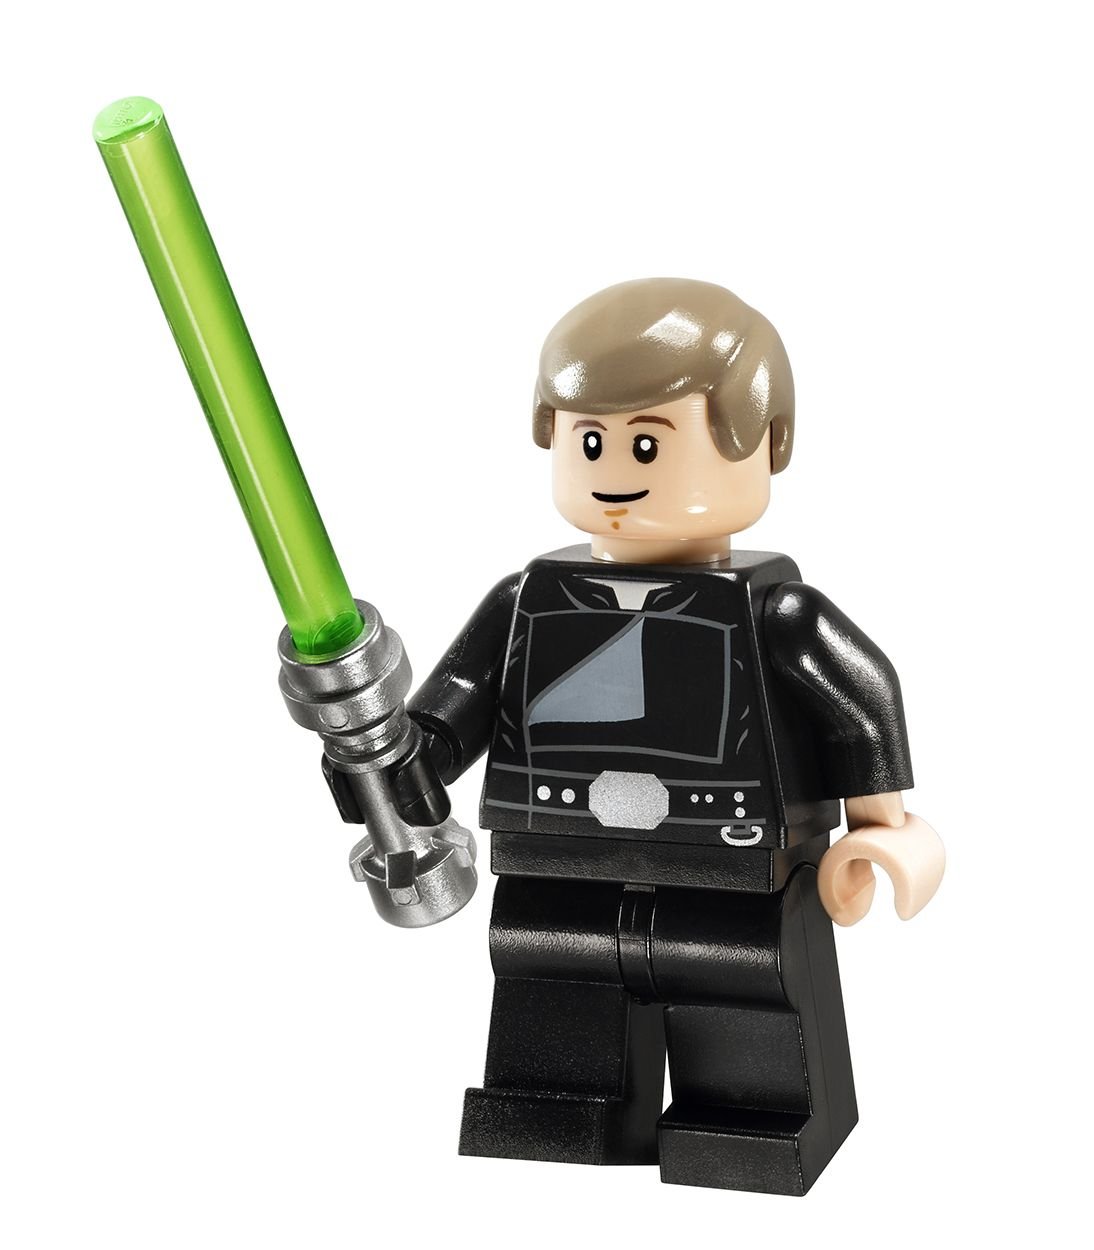 LEGO Star Wars 10236 Ewok™ Village 10236_1to1_0016_LukeA.jpg